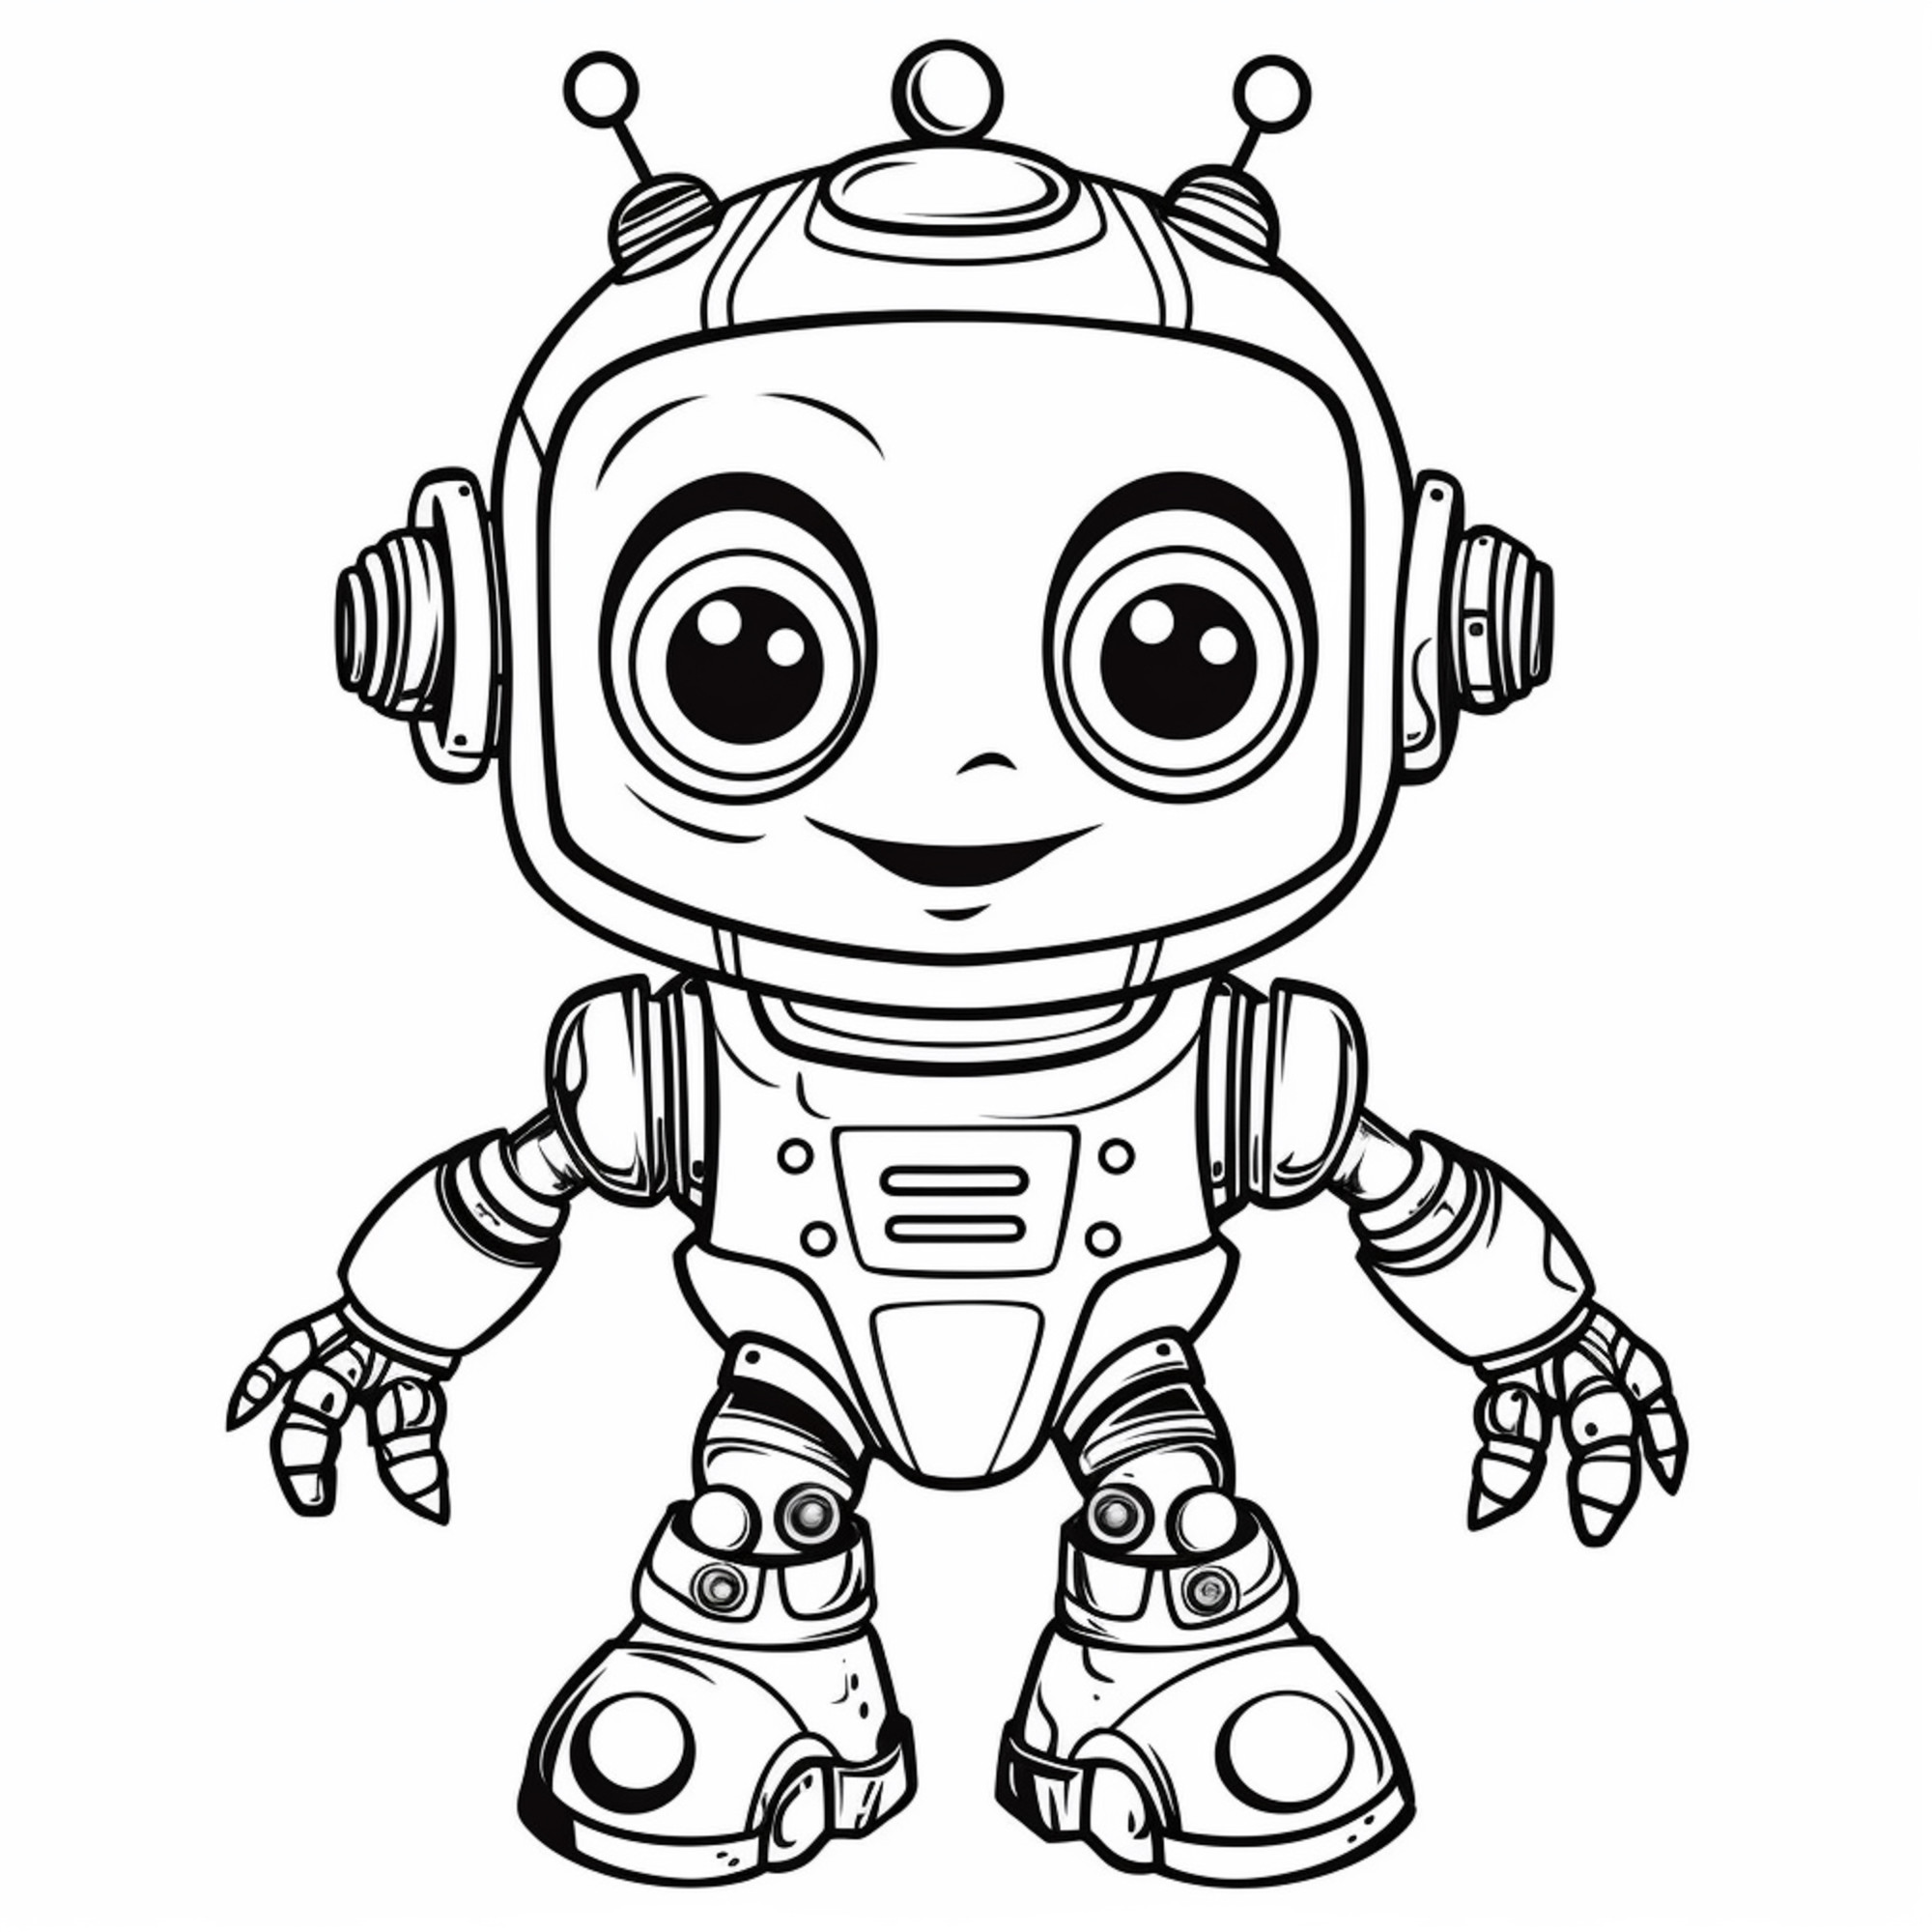 Раскраска для детей: милый робот малыш с красивыми глазами